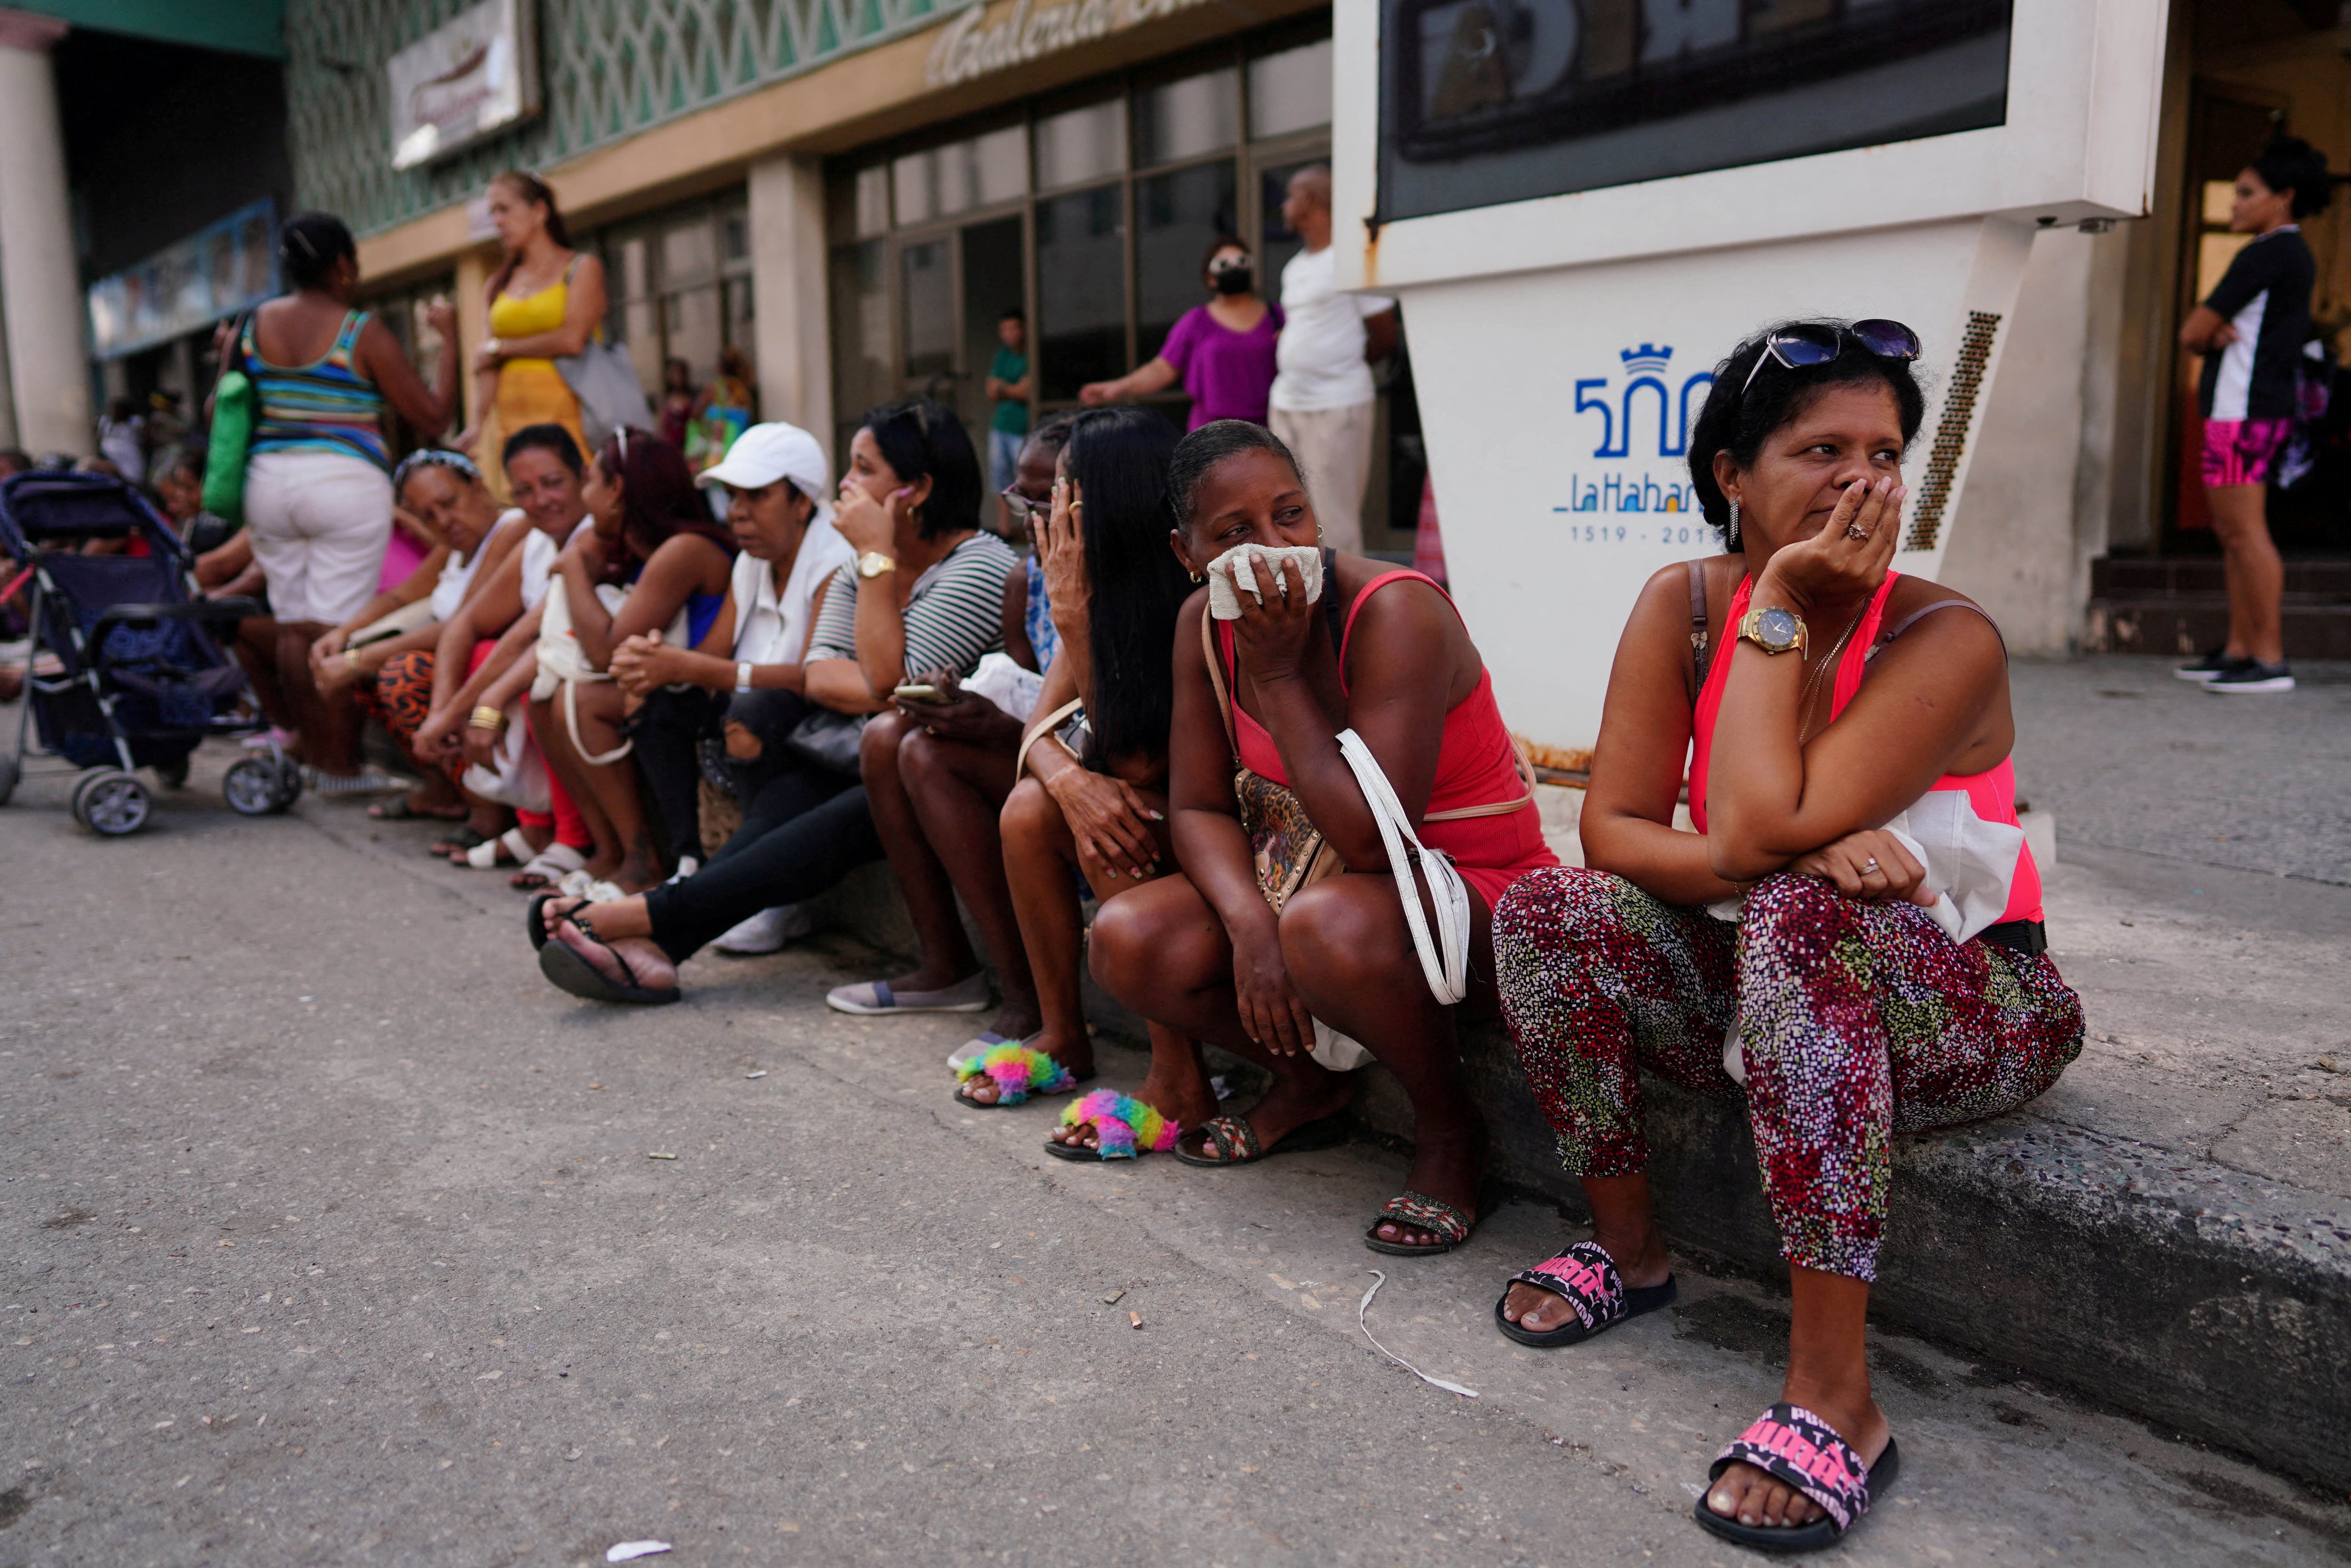 Un grupo de personas hace fila para entrar en una tienda en el centro de La Habana, Cuba, en octubre de 2022 (REUTERS/Alexandre Meneghini)